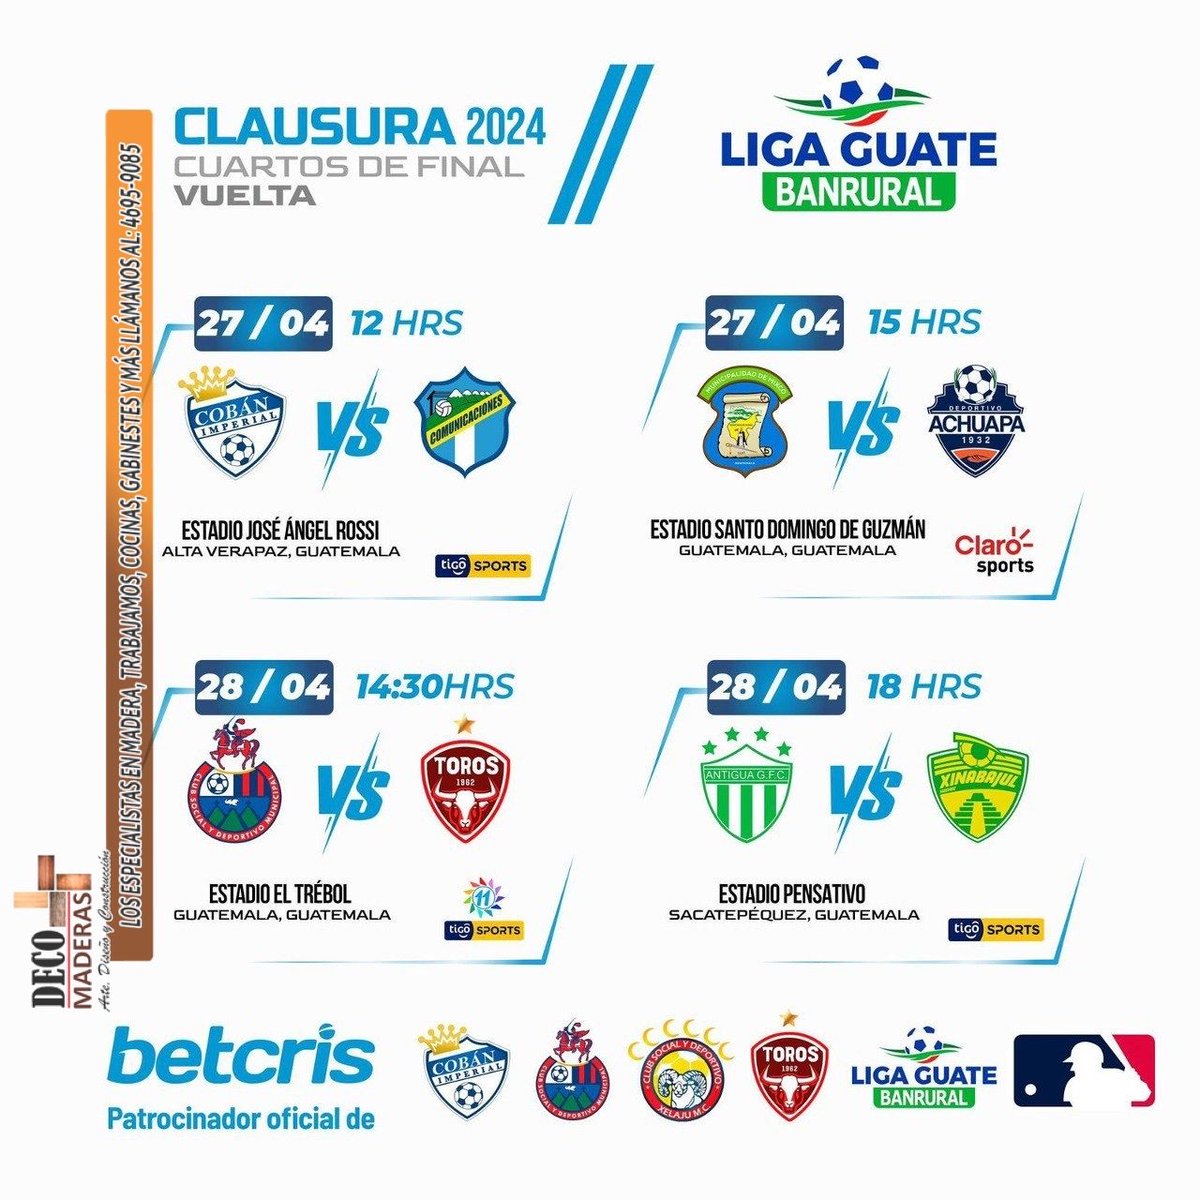 #LigaGT | CUARTOS DE FINAL - VUELTA 

Hoy a medio día inician los juegos de vuelta en los Cuartos de Final de la #LigaGuatemalteca 

Información gracias a: #DECOMADERAS